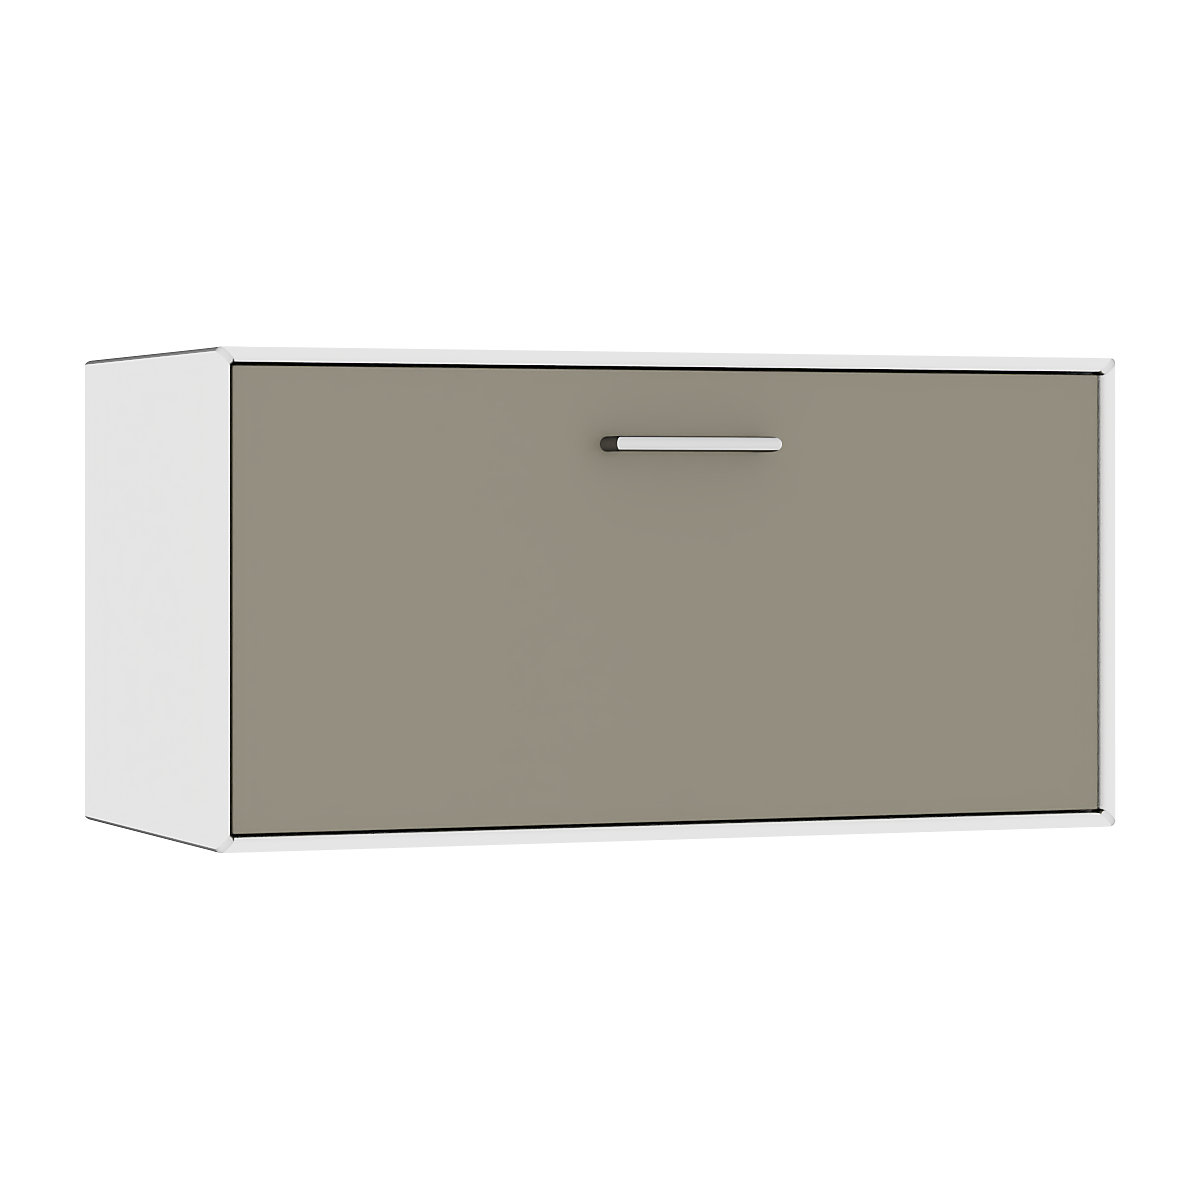 Egyes doboz, függő – mauser, 1 fiók, szélesség 770 mm, tiszta fehér / bézsesszürke-7